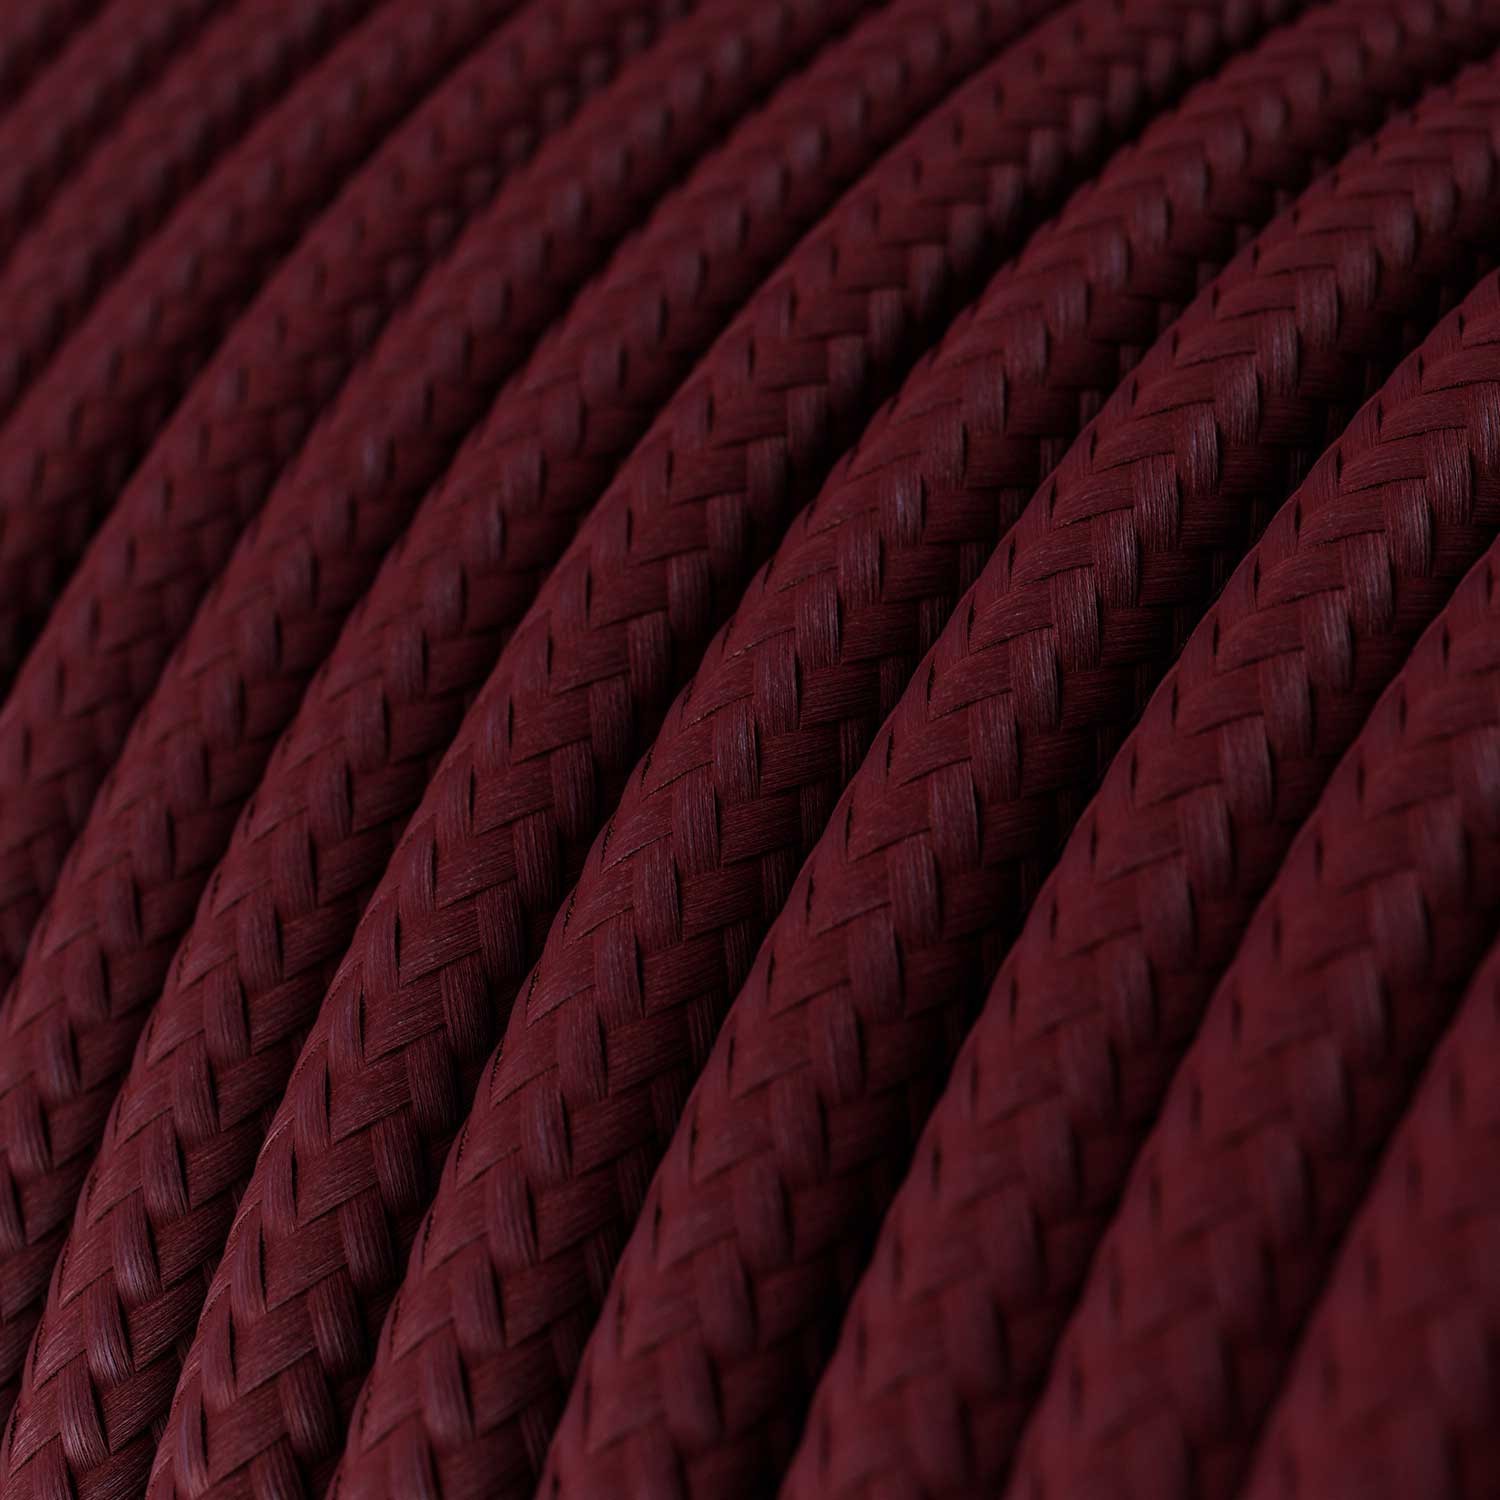 Ronde flexibele electriciteit textielkabel van viscose. RM19 - donkerrood (burgundy)